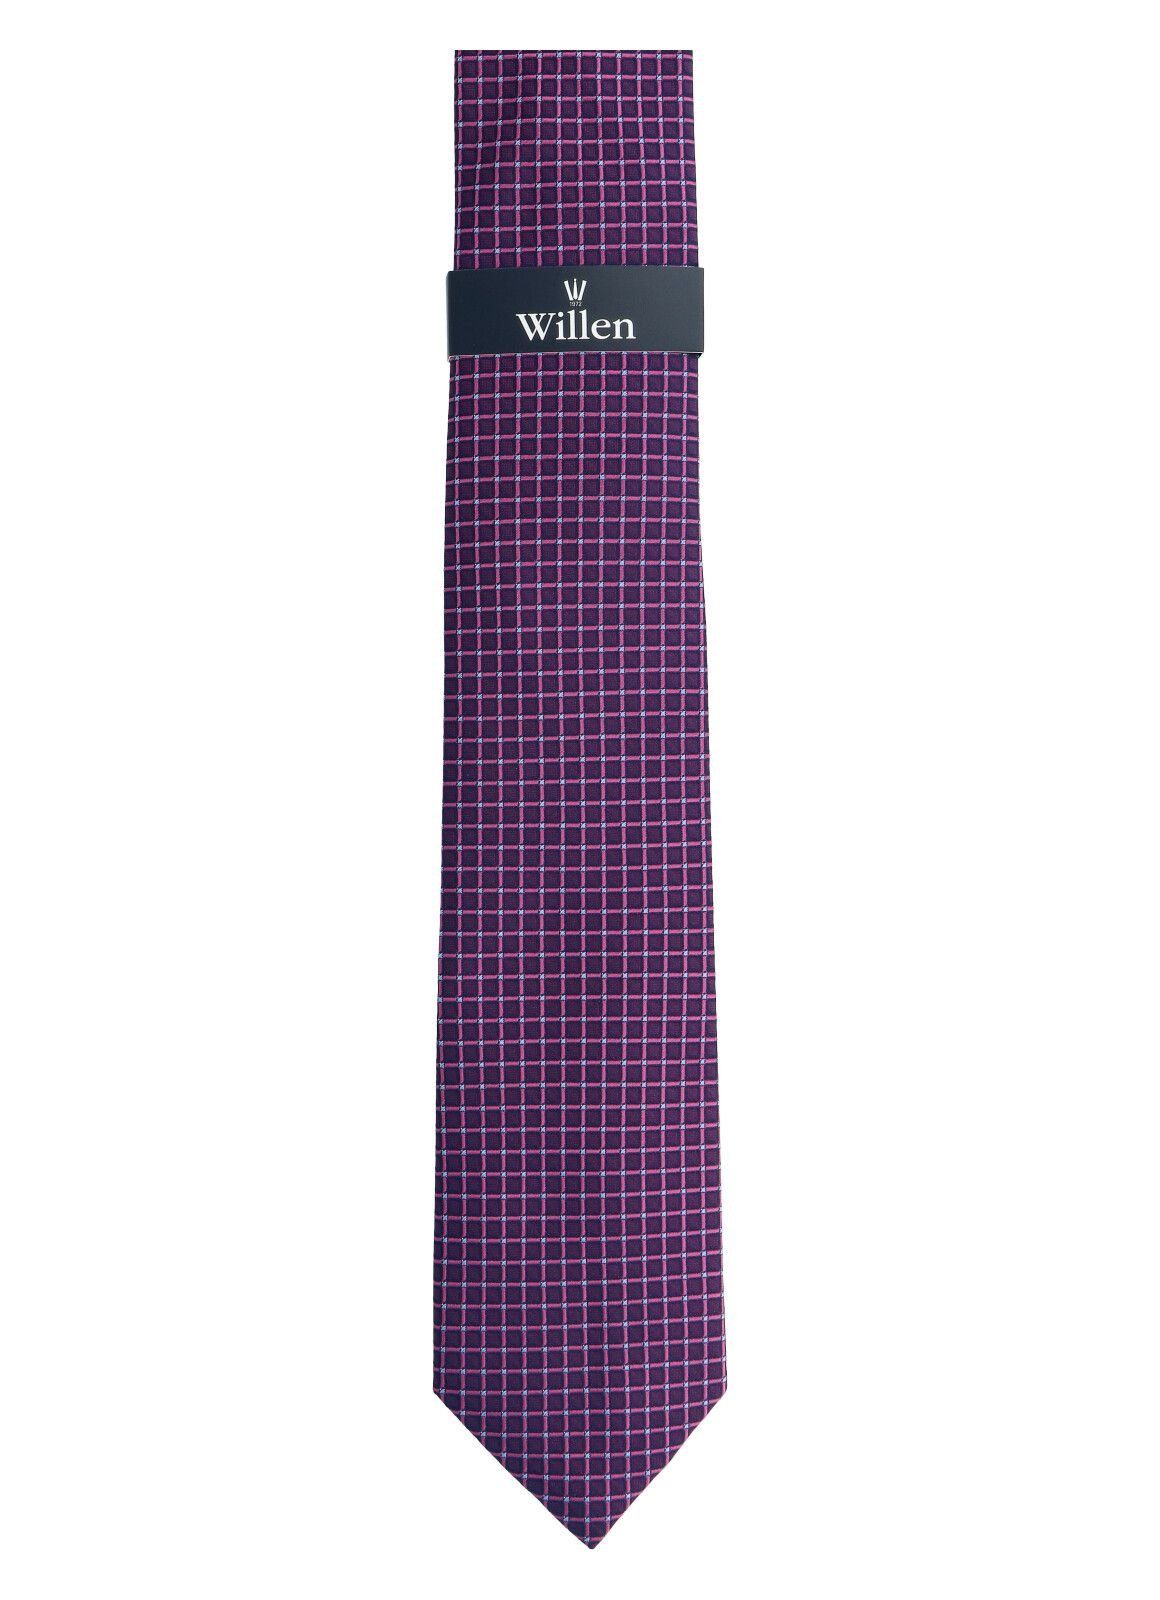 WILLEN Krawatte fuchsia